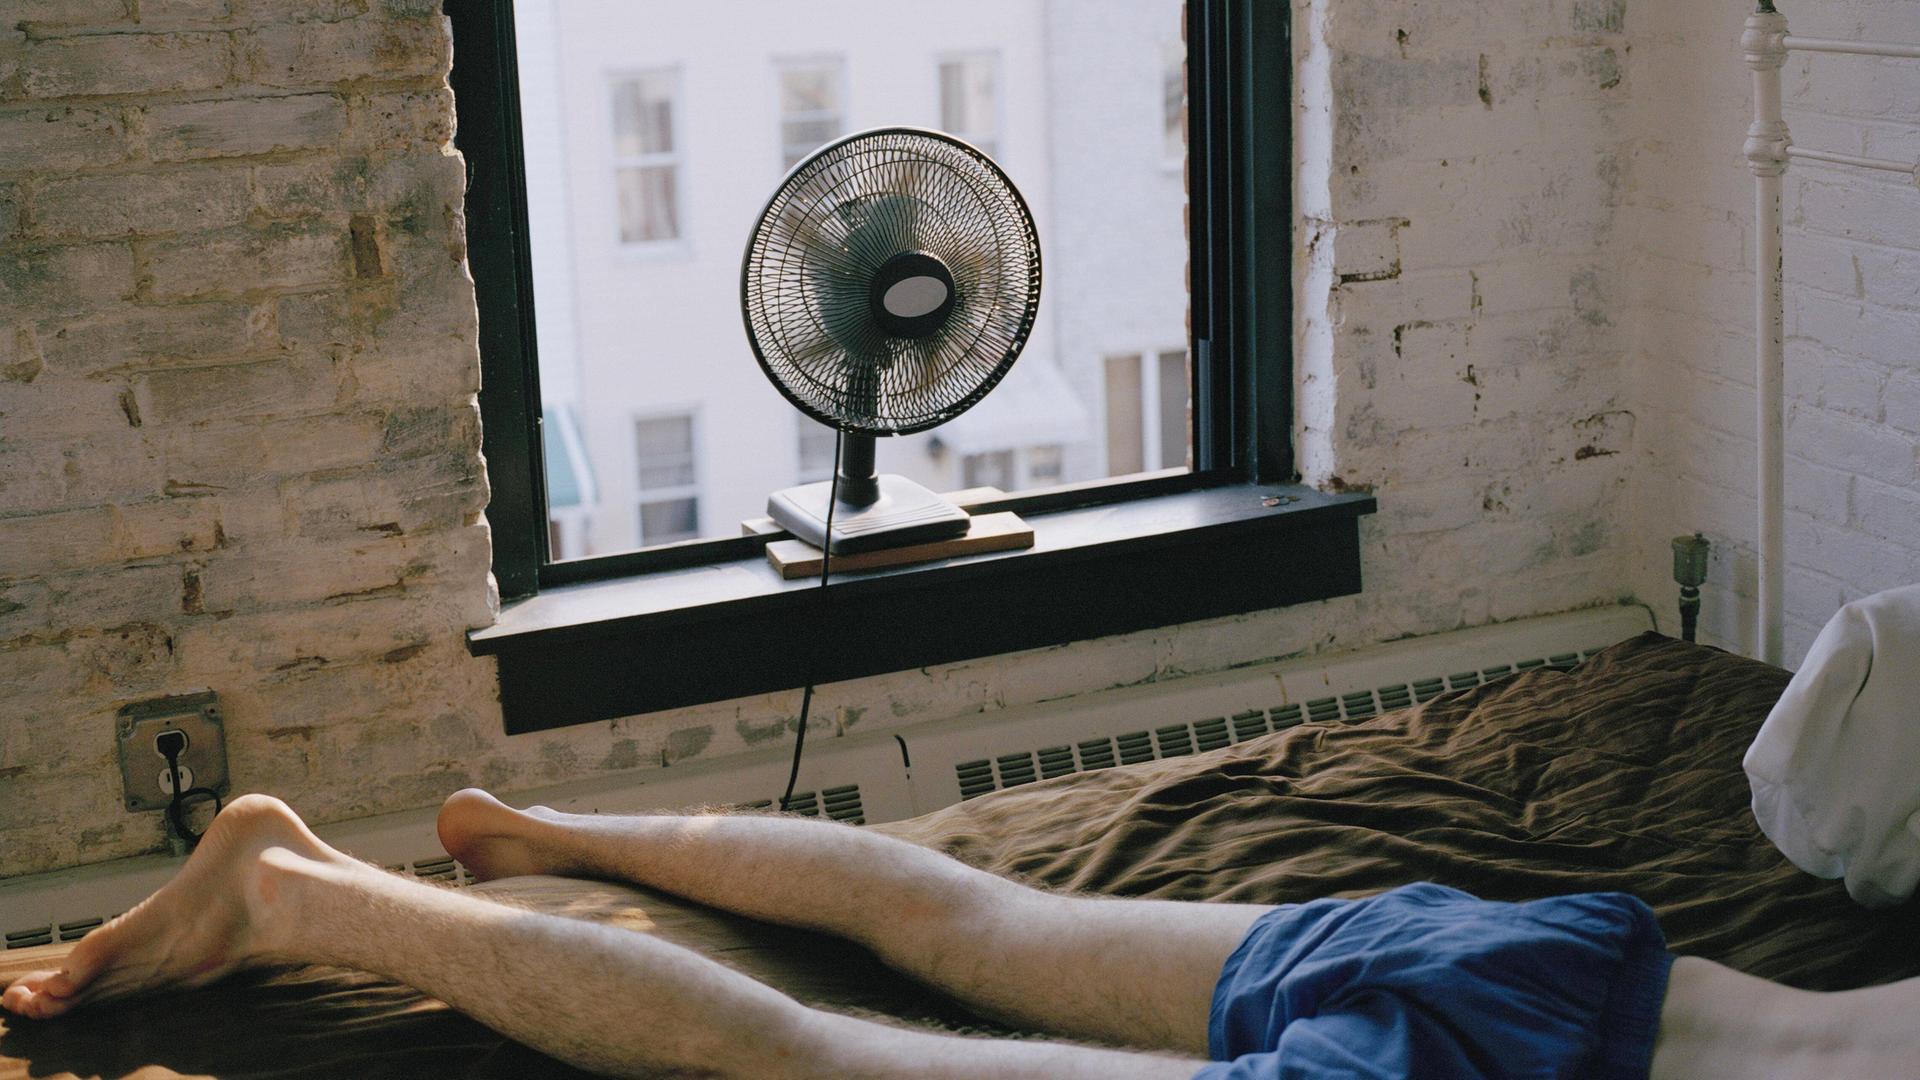 Ein Mann liegt in Unterhose auf einem Bett in einem Zimmer. Ein Ventilator steht auf dem Fensterbrett.